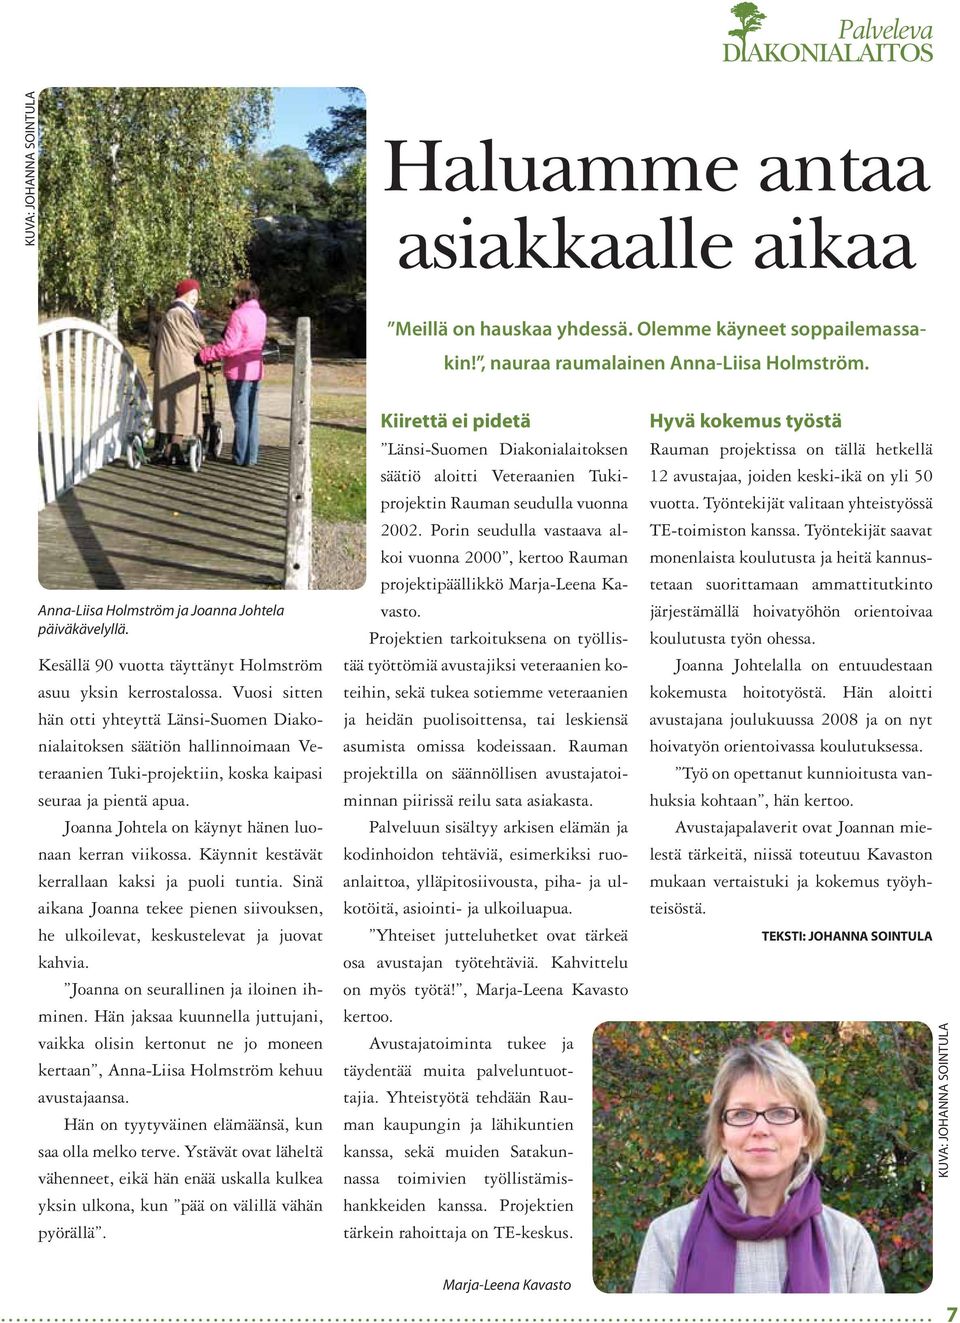 Vuosi sitten hän otti yhteyttä Länsi-Suomen Diakonialaitoksen säätiön hallinnoimaan Veteraanien Tuki-projektiin, koska kaipasi seuraa ja pientä apua.